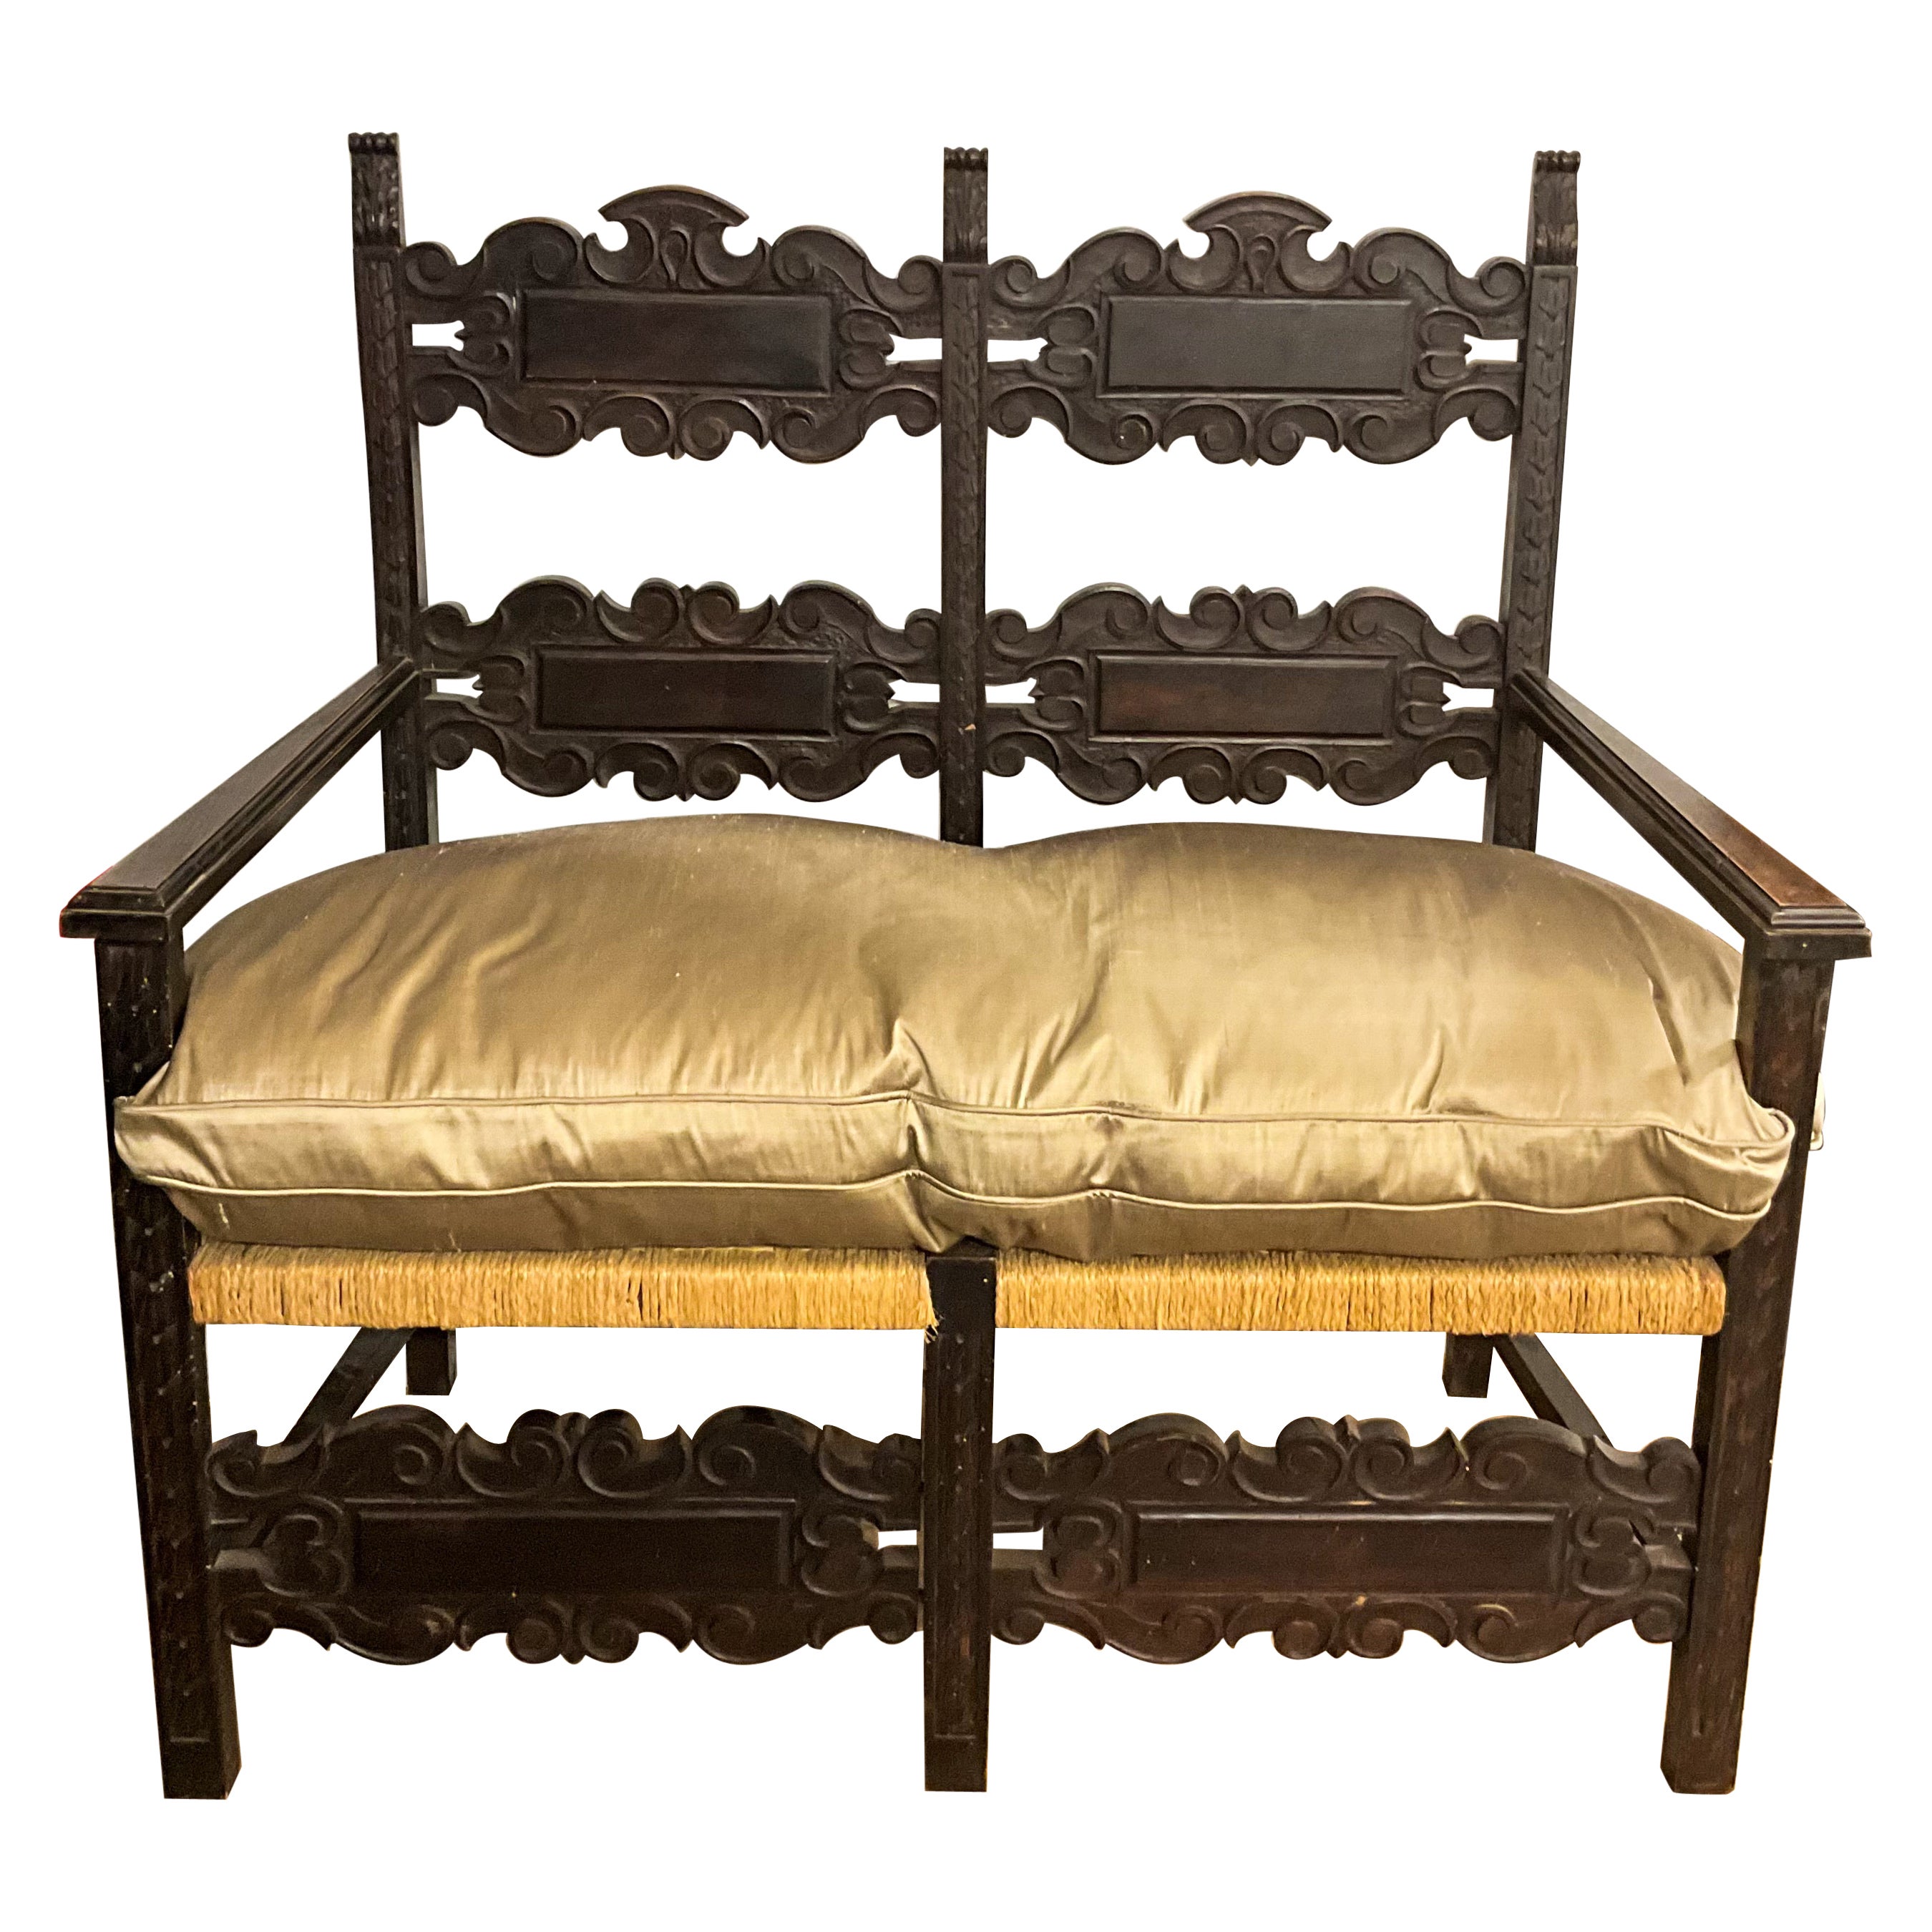 19ème siècle. Canapé en chêne français ébonisé sculpté avec assise en jonc et coussin en duvet de soie